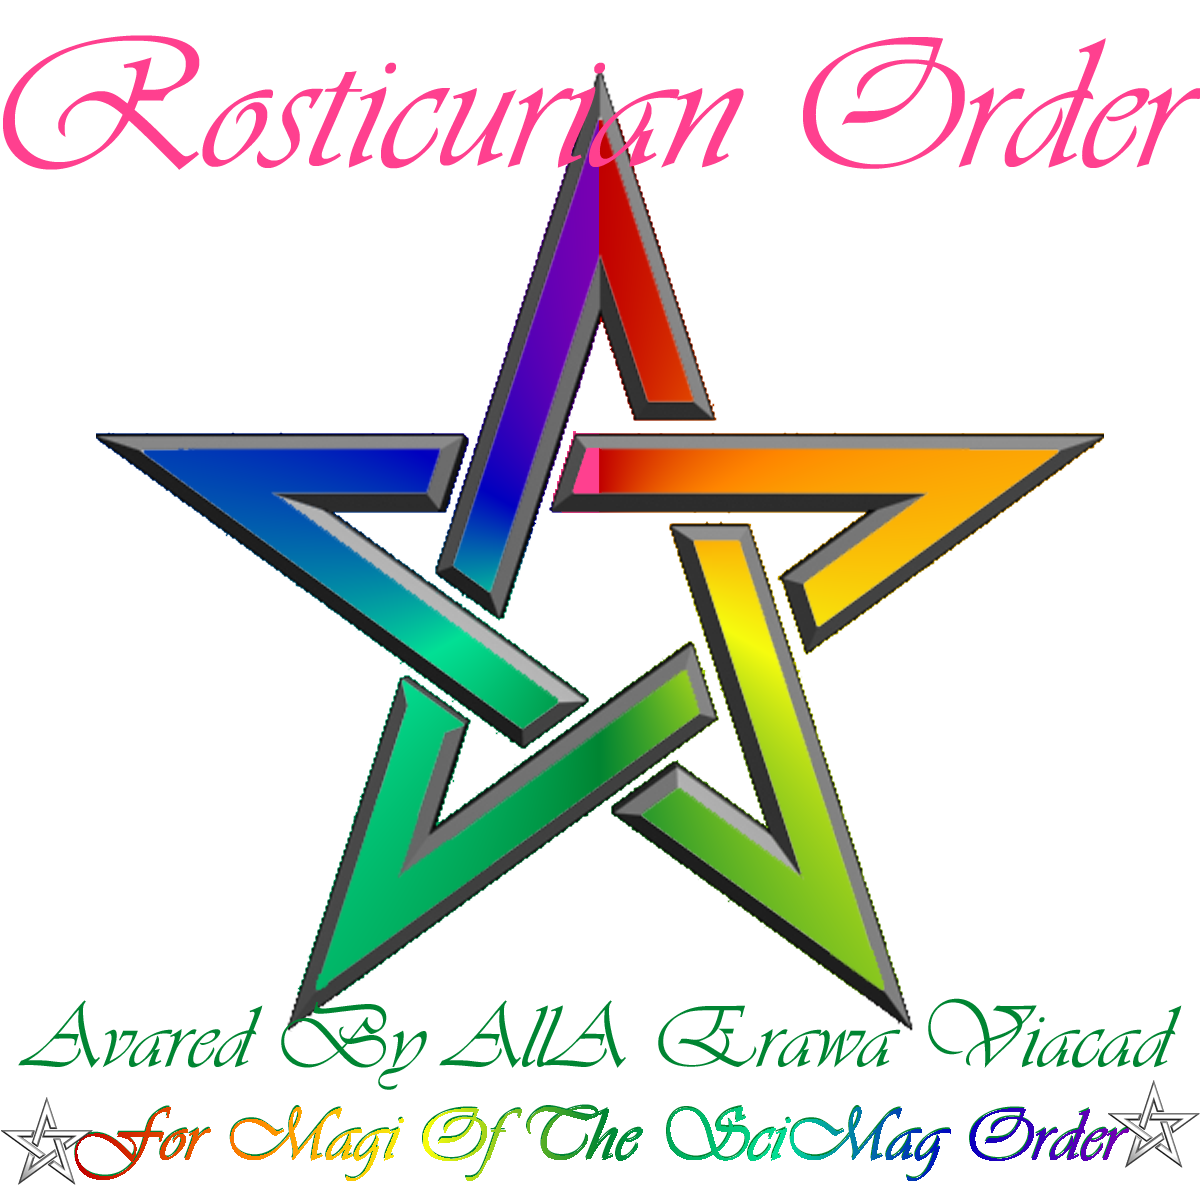 Rosticurian Order, Rosicrucian Order